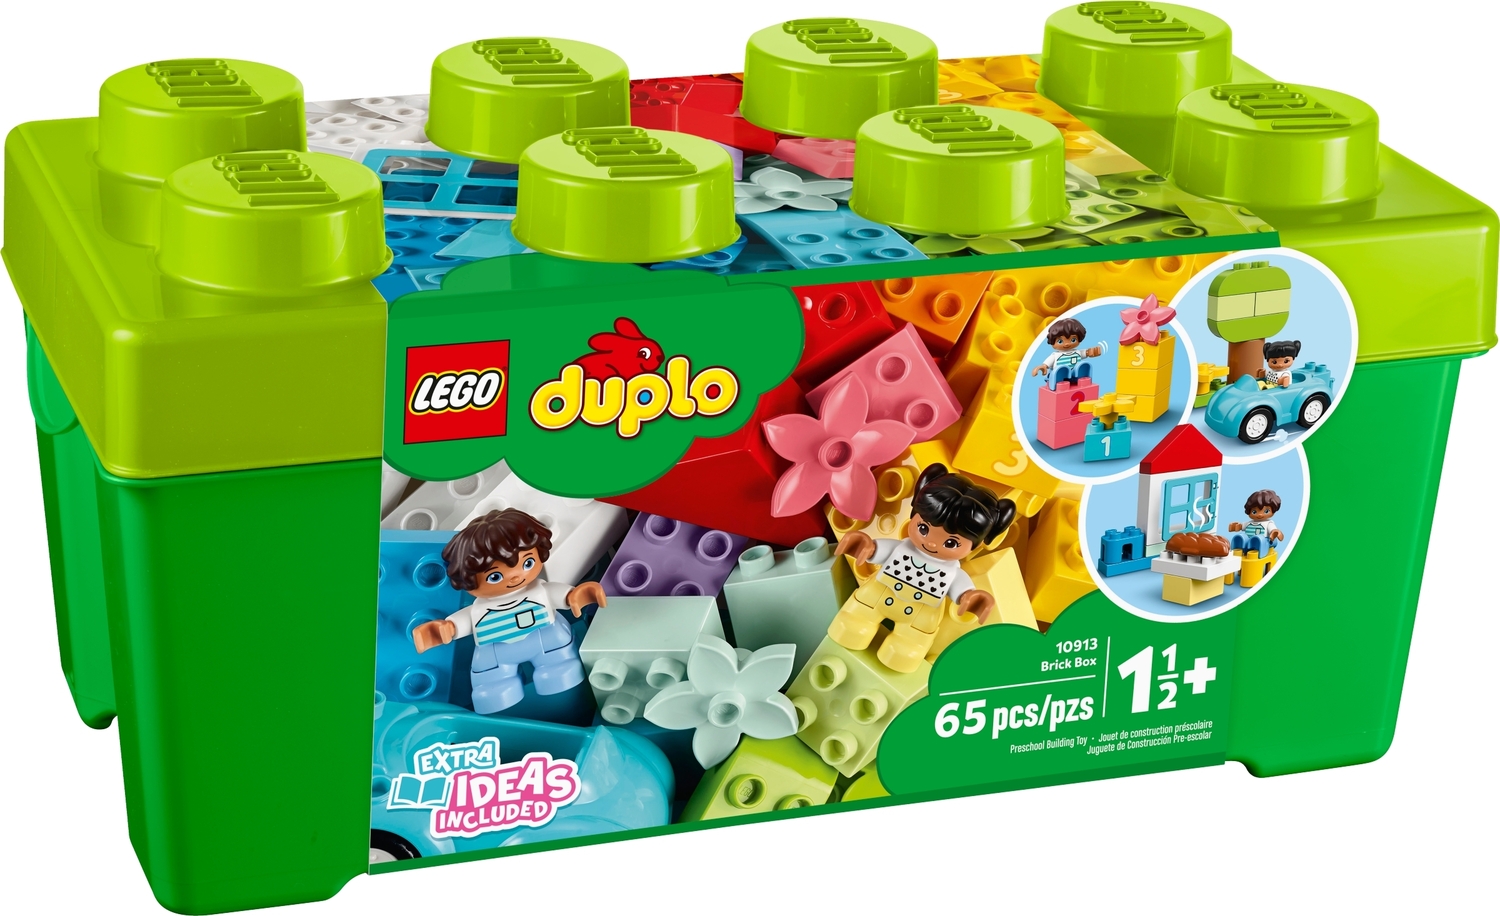 LEGO DUPLO: Brick Box - Imagination Toys